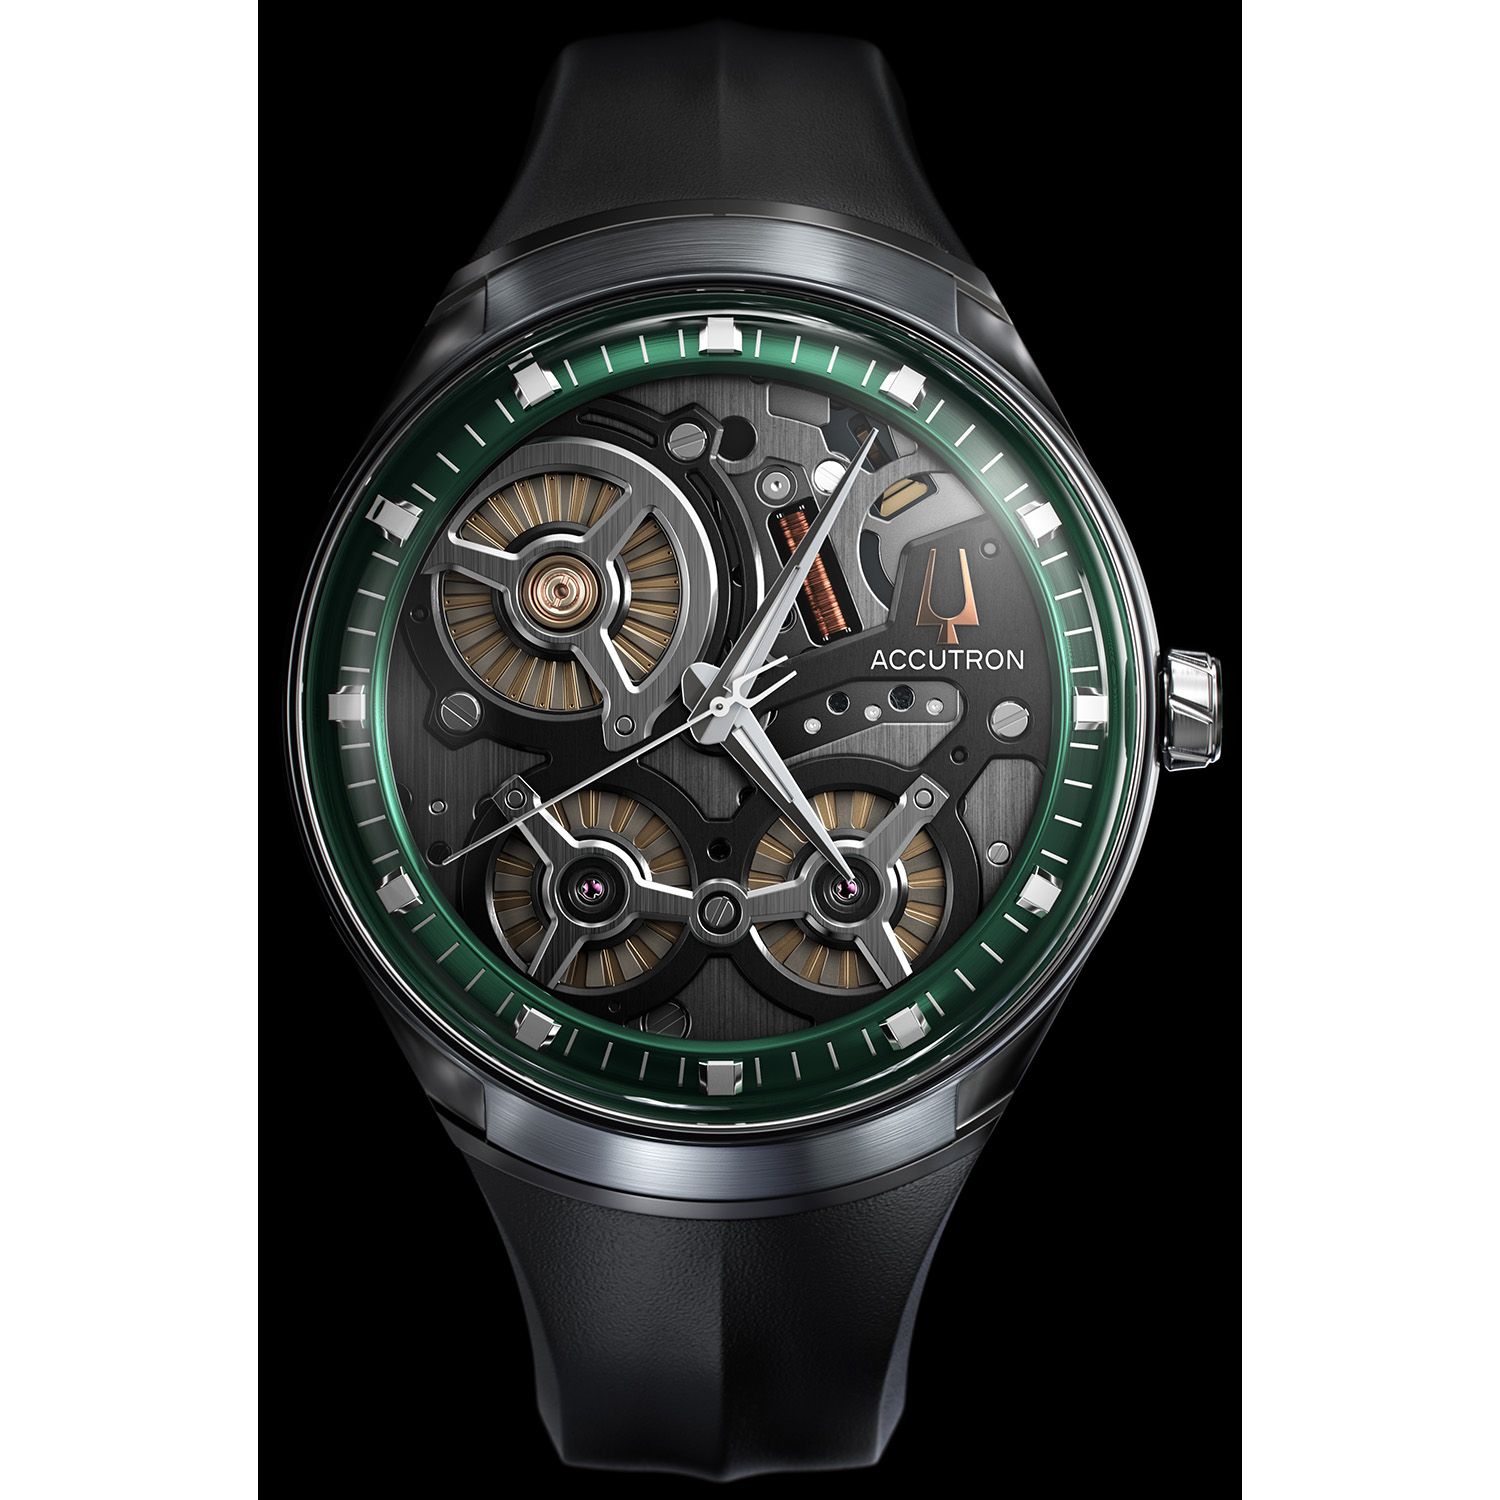 アメリカの時計ブランド「アキュトロン」 生誕60周年を機に、世界初“静電誘導”機能を搭載した【アキュトロン スペースビュー 2020】発売